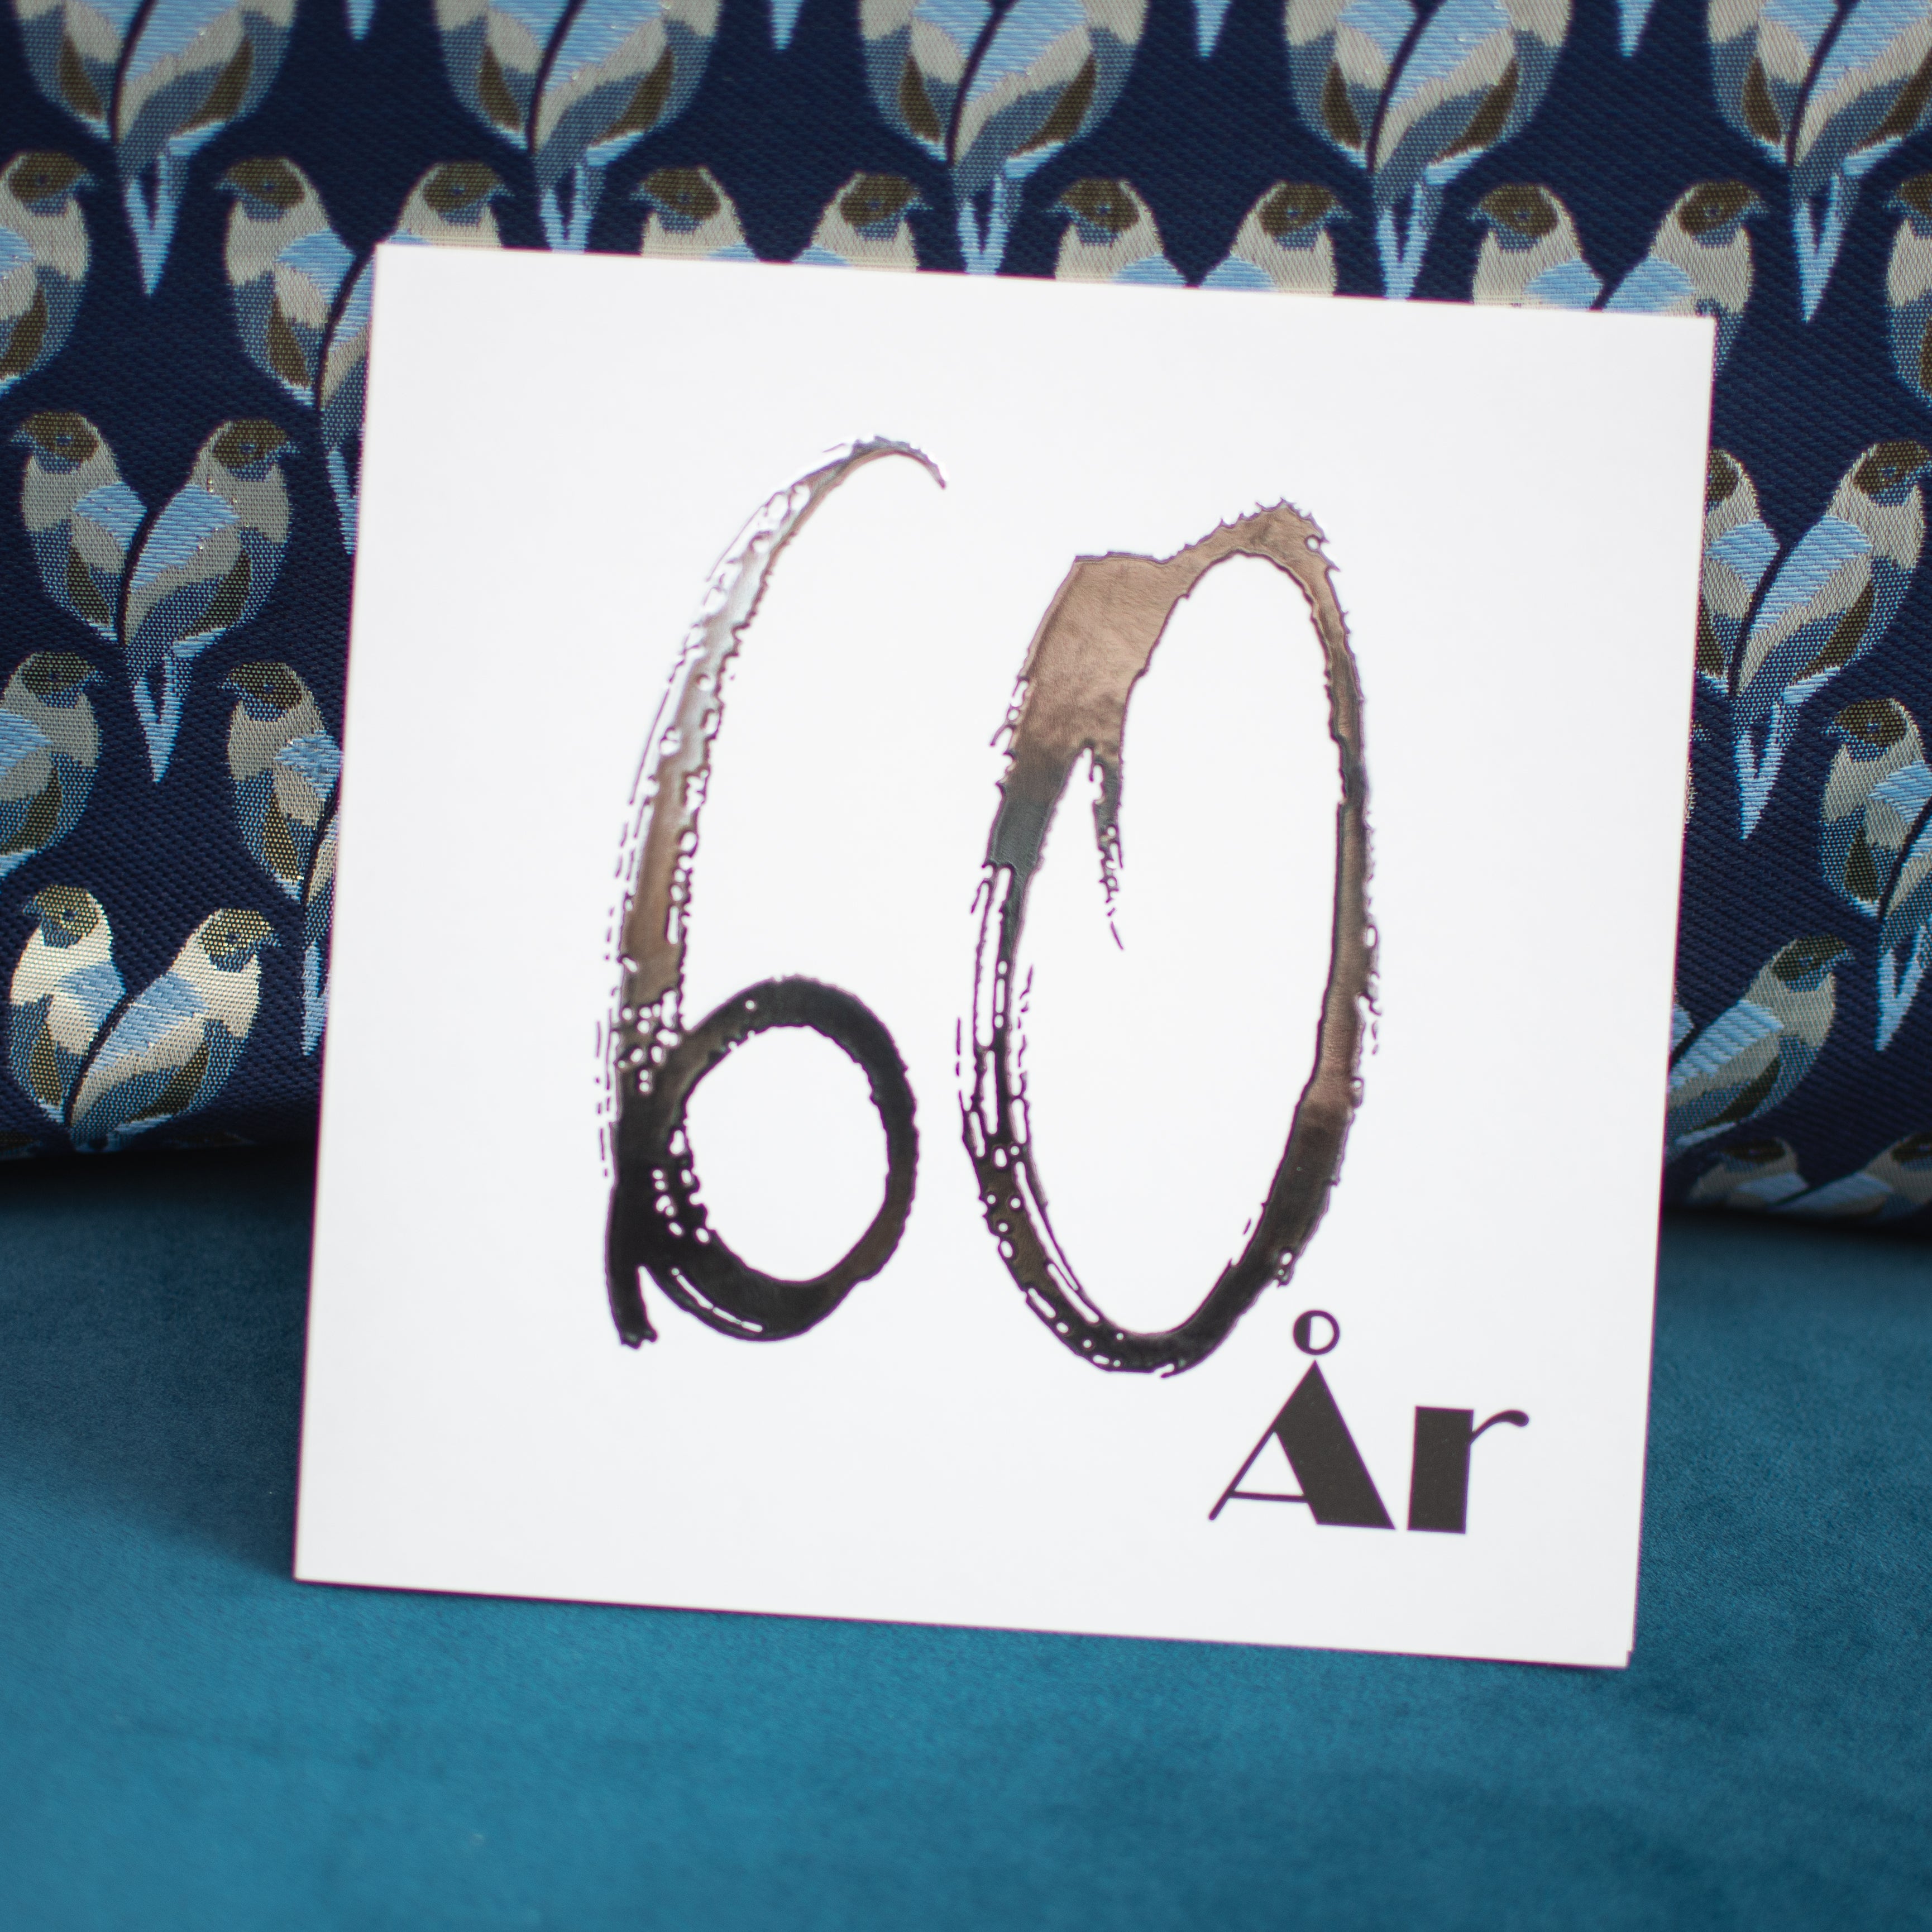 60 ÅR - Fødselsdags- og Jubilæumskort